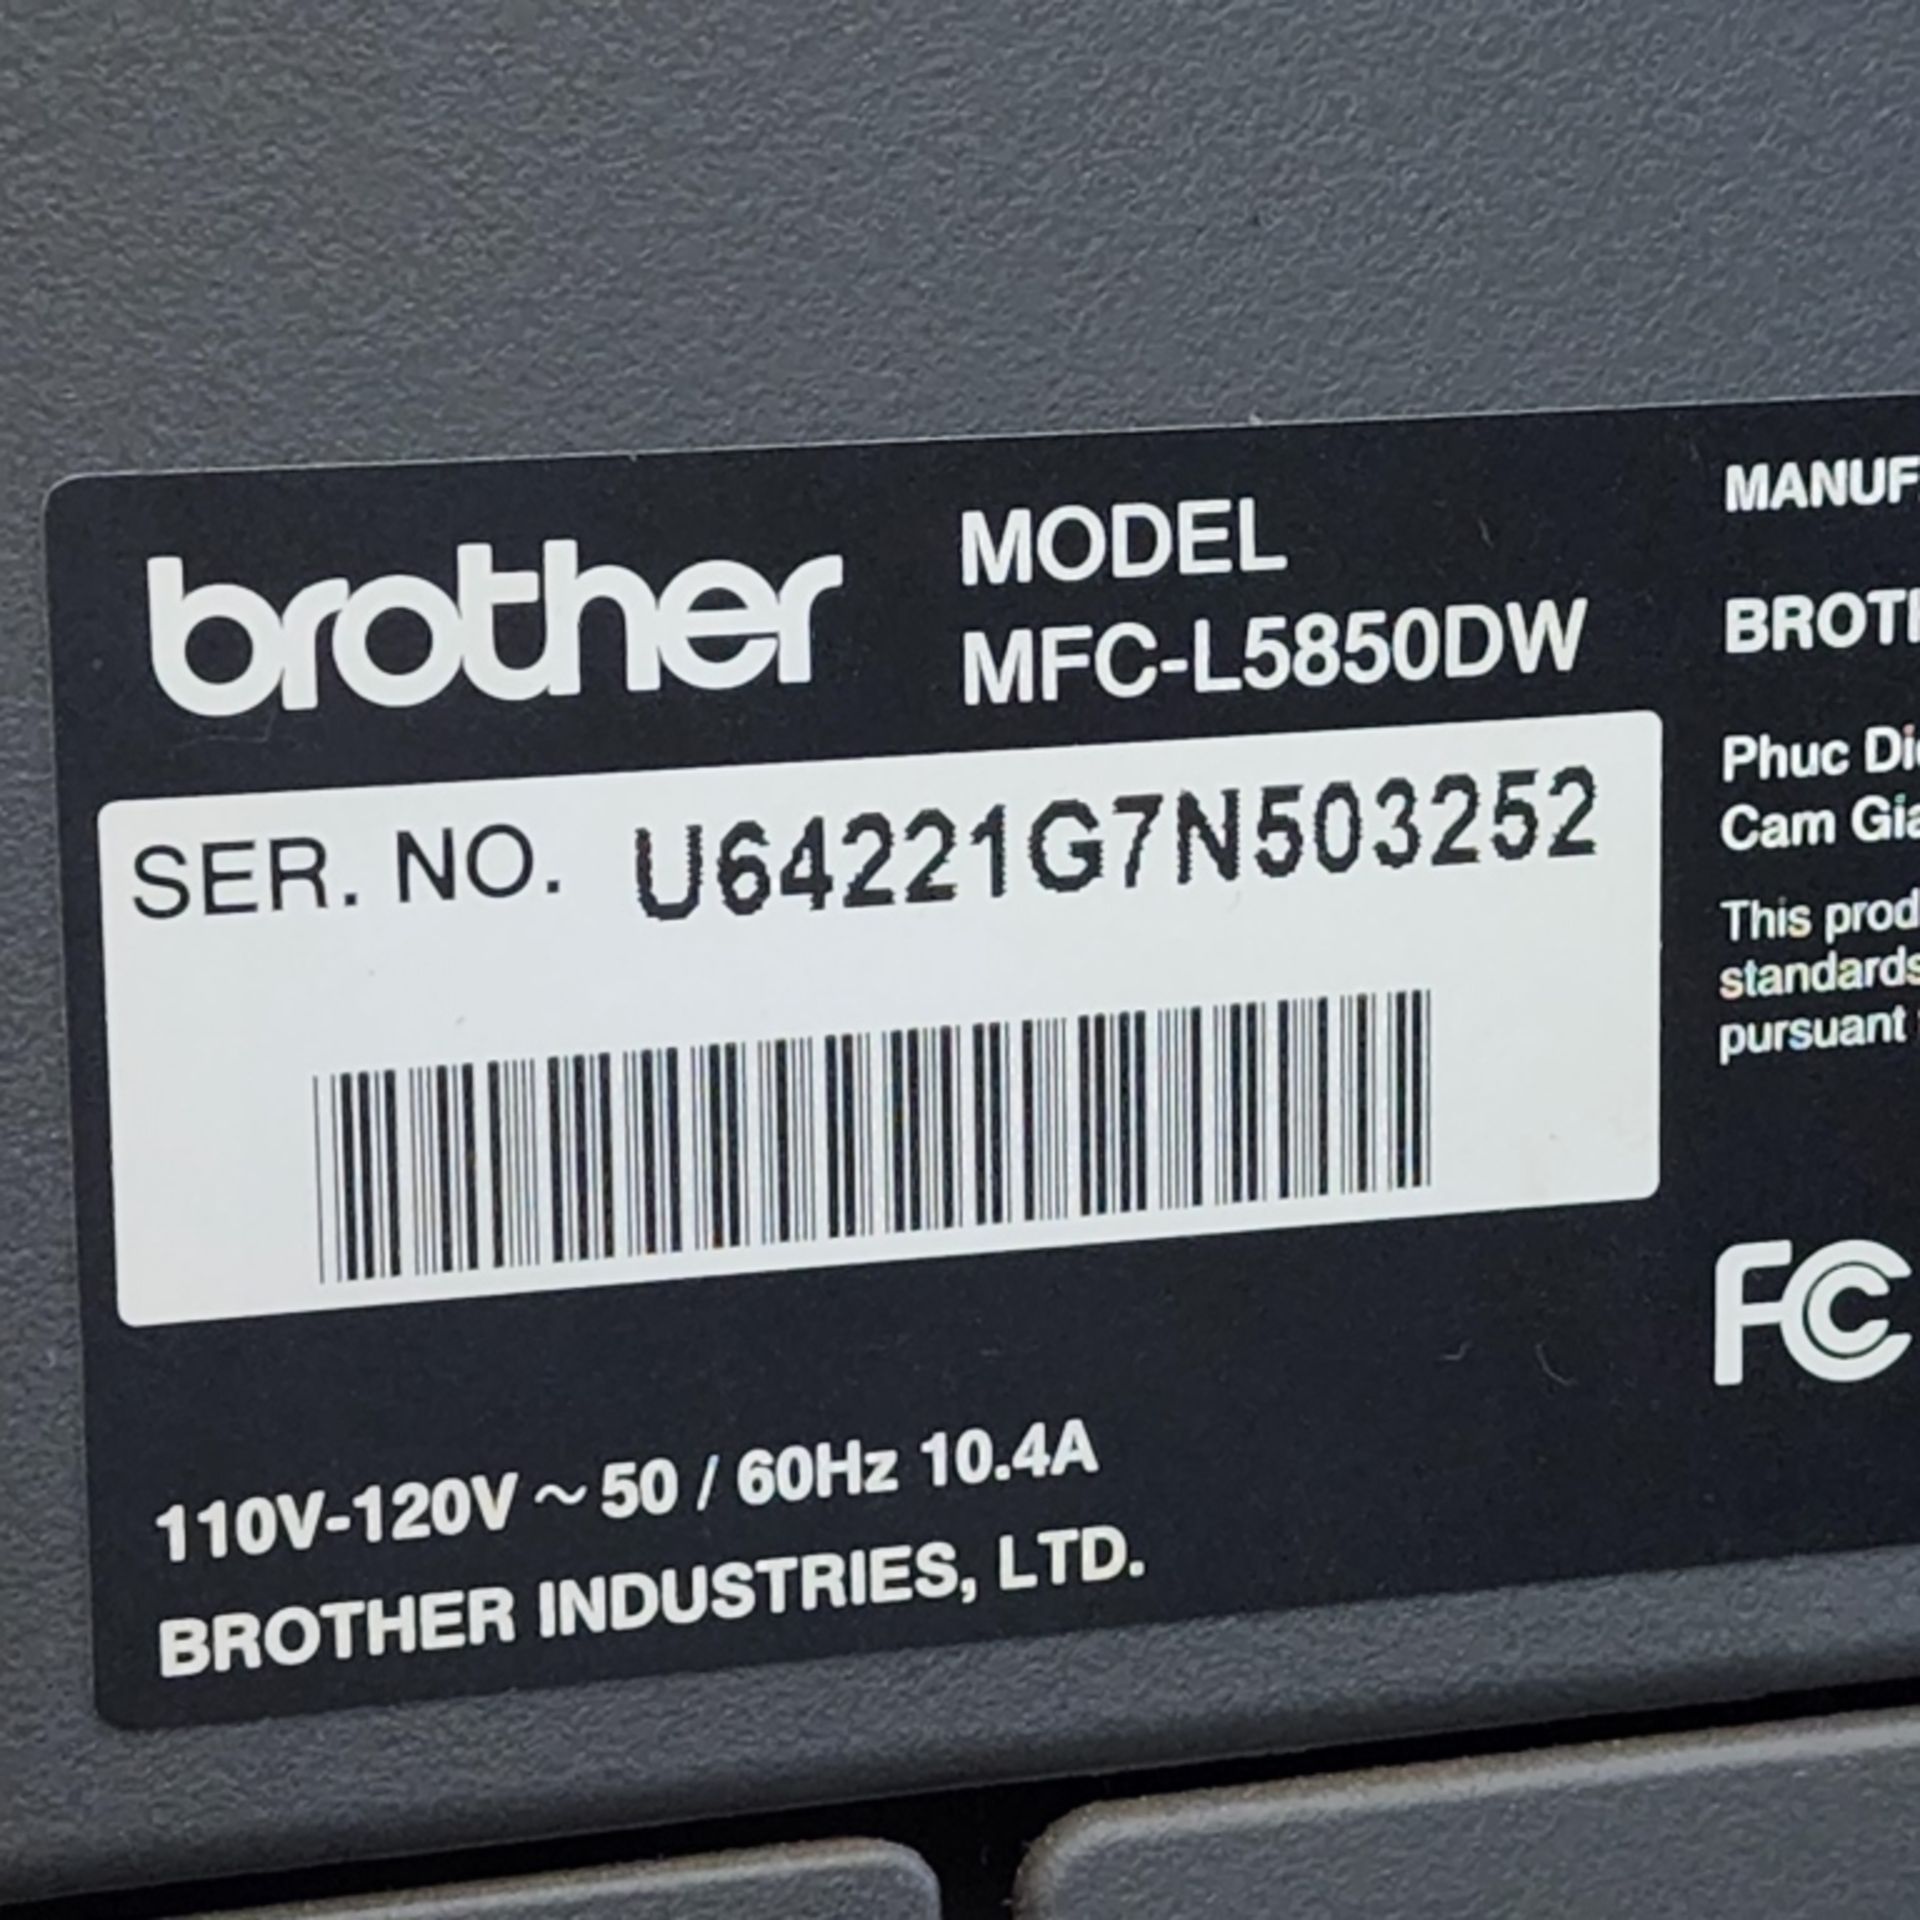 Brother Printer/Scanner Model: MFC-L5850DW - Image 6 of 6